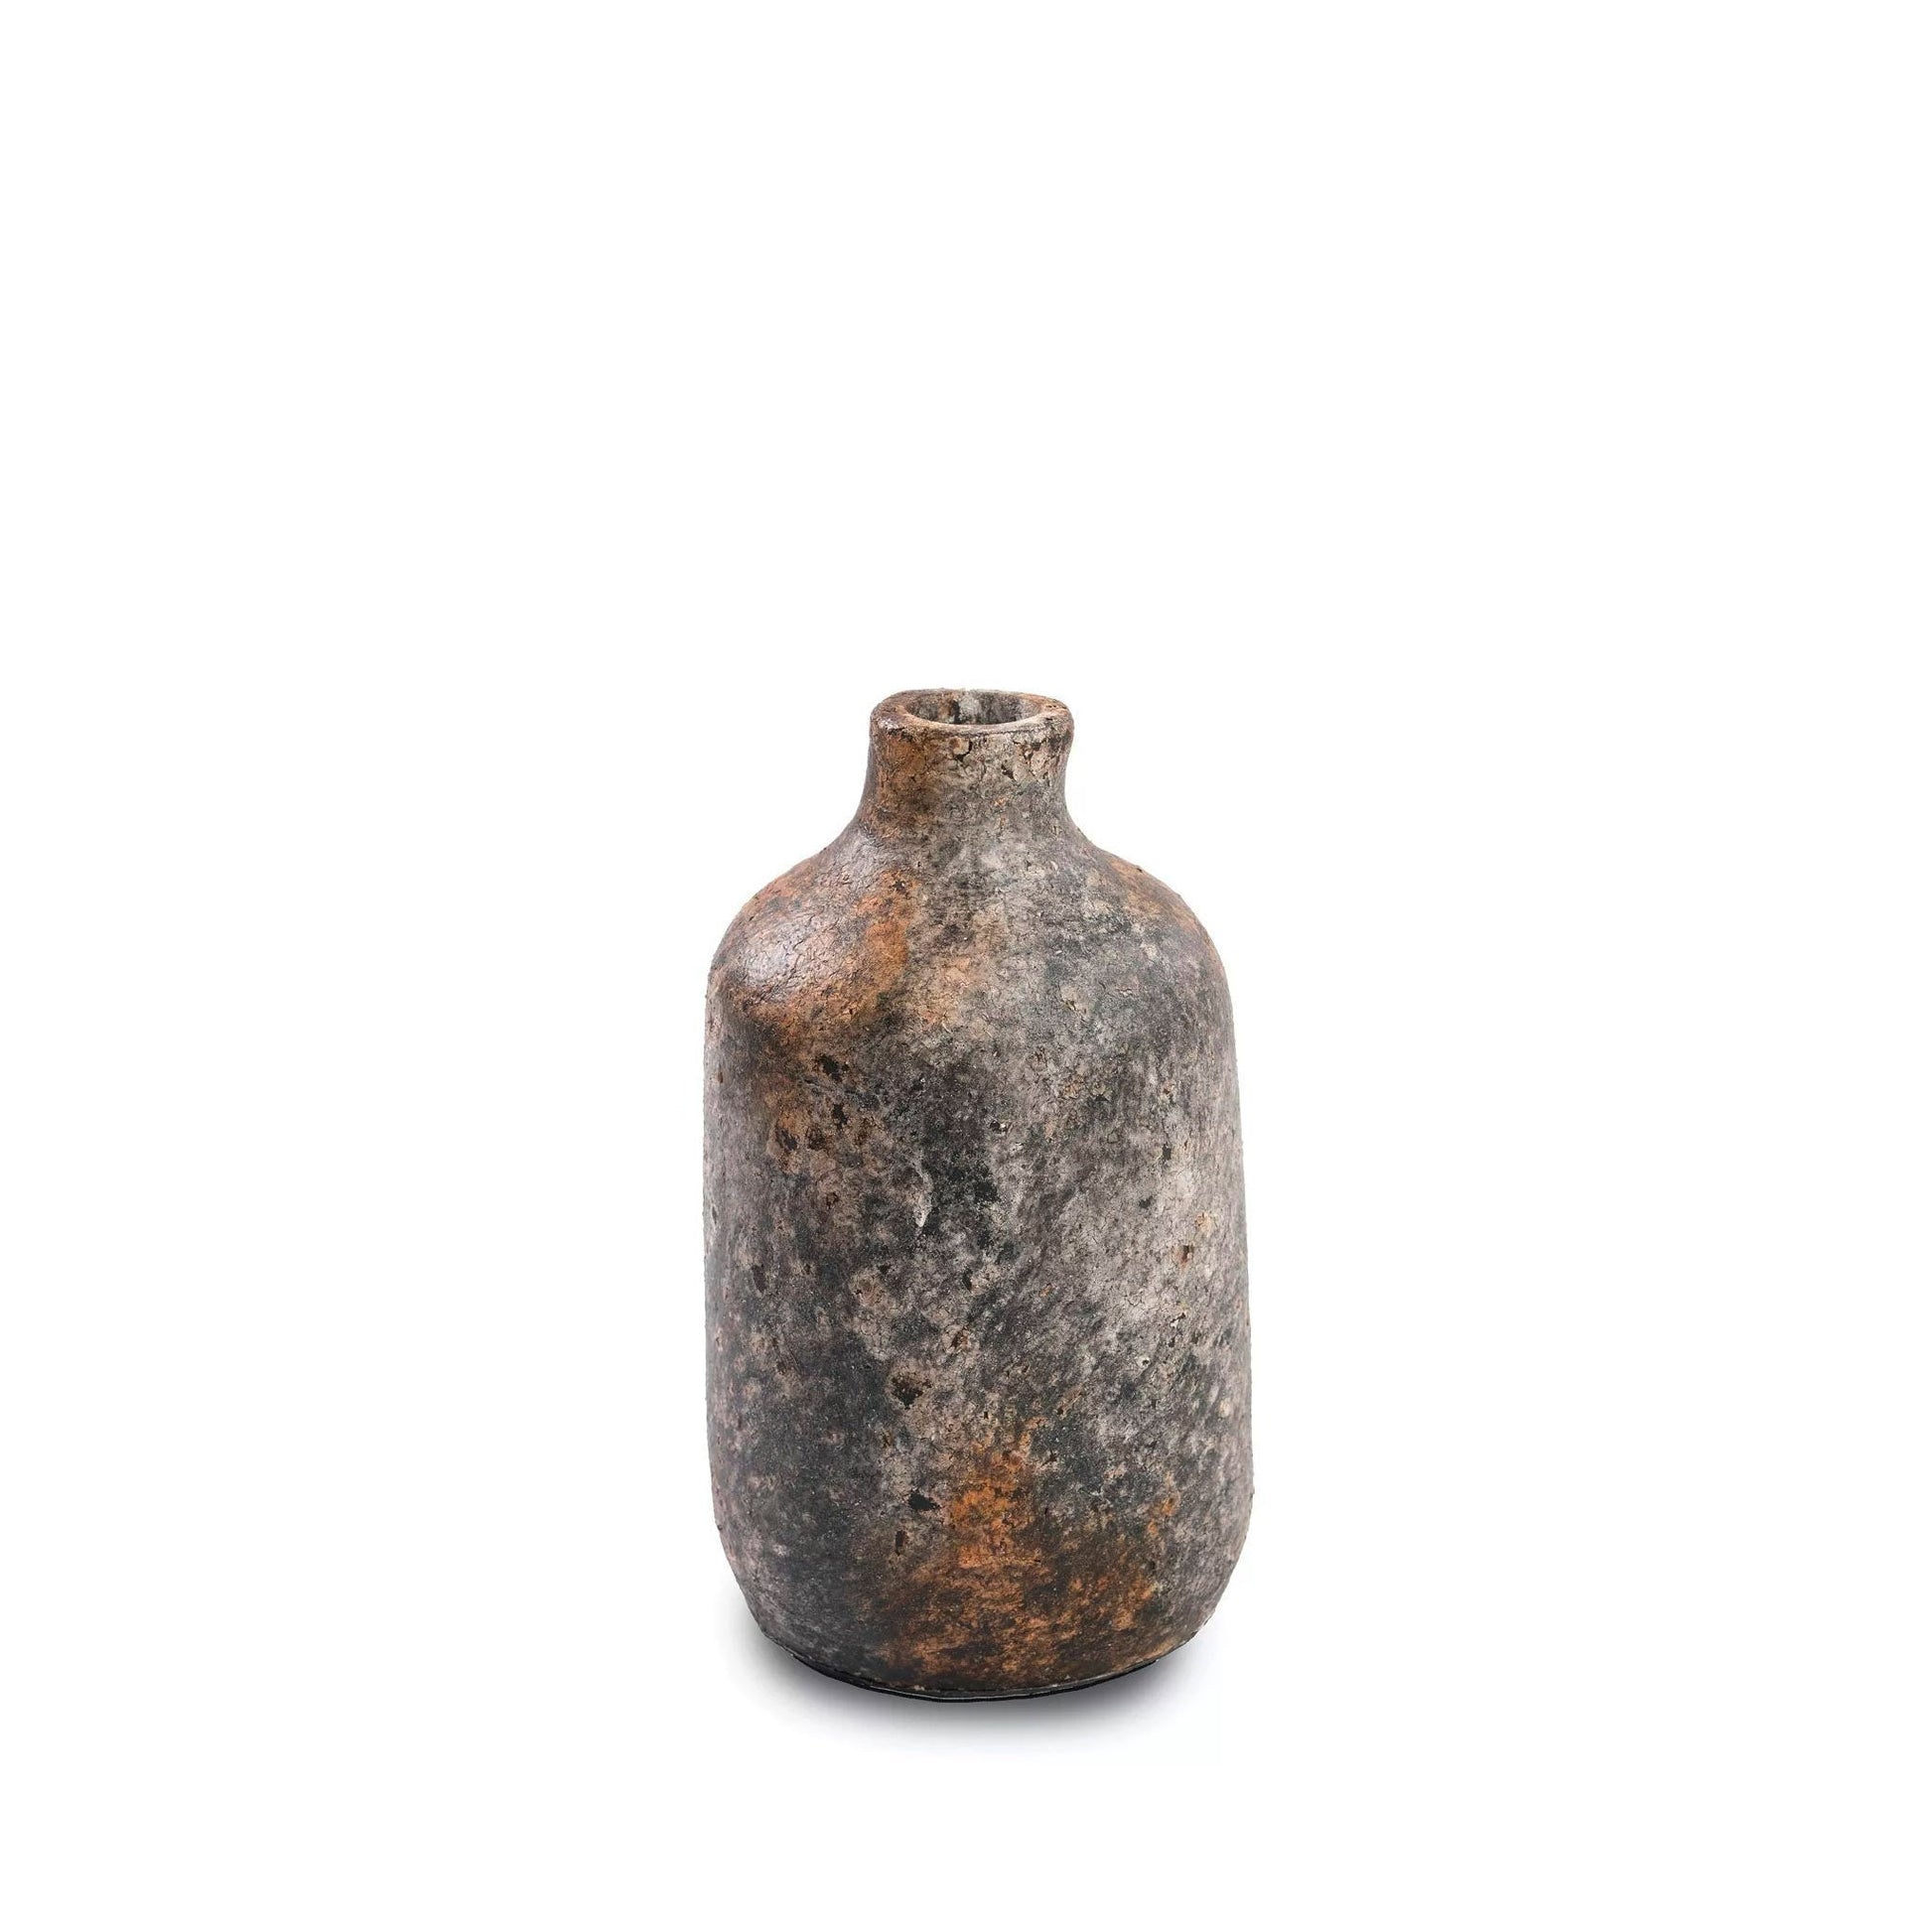 Rustikale Vase in Antikgrau - Vandeley